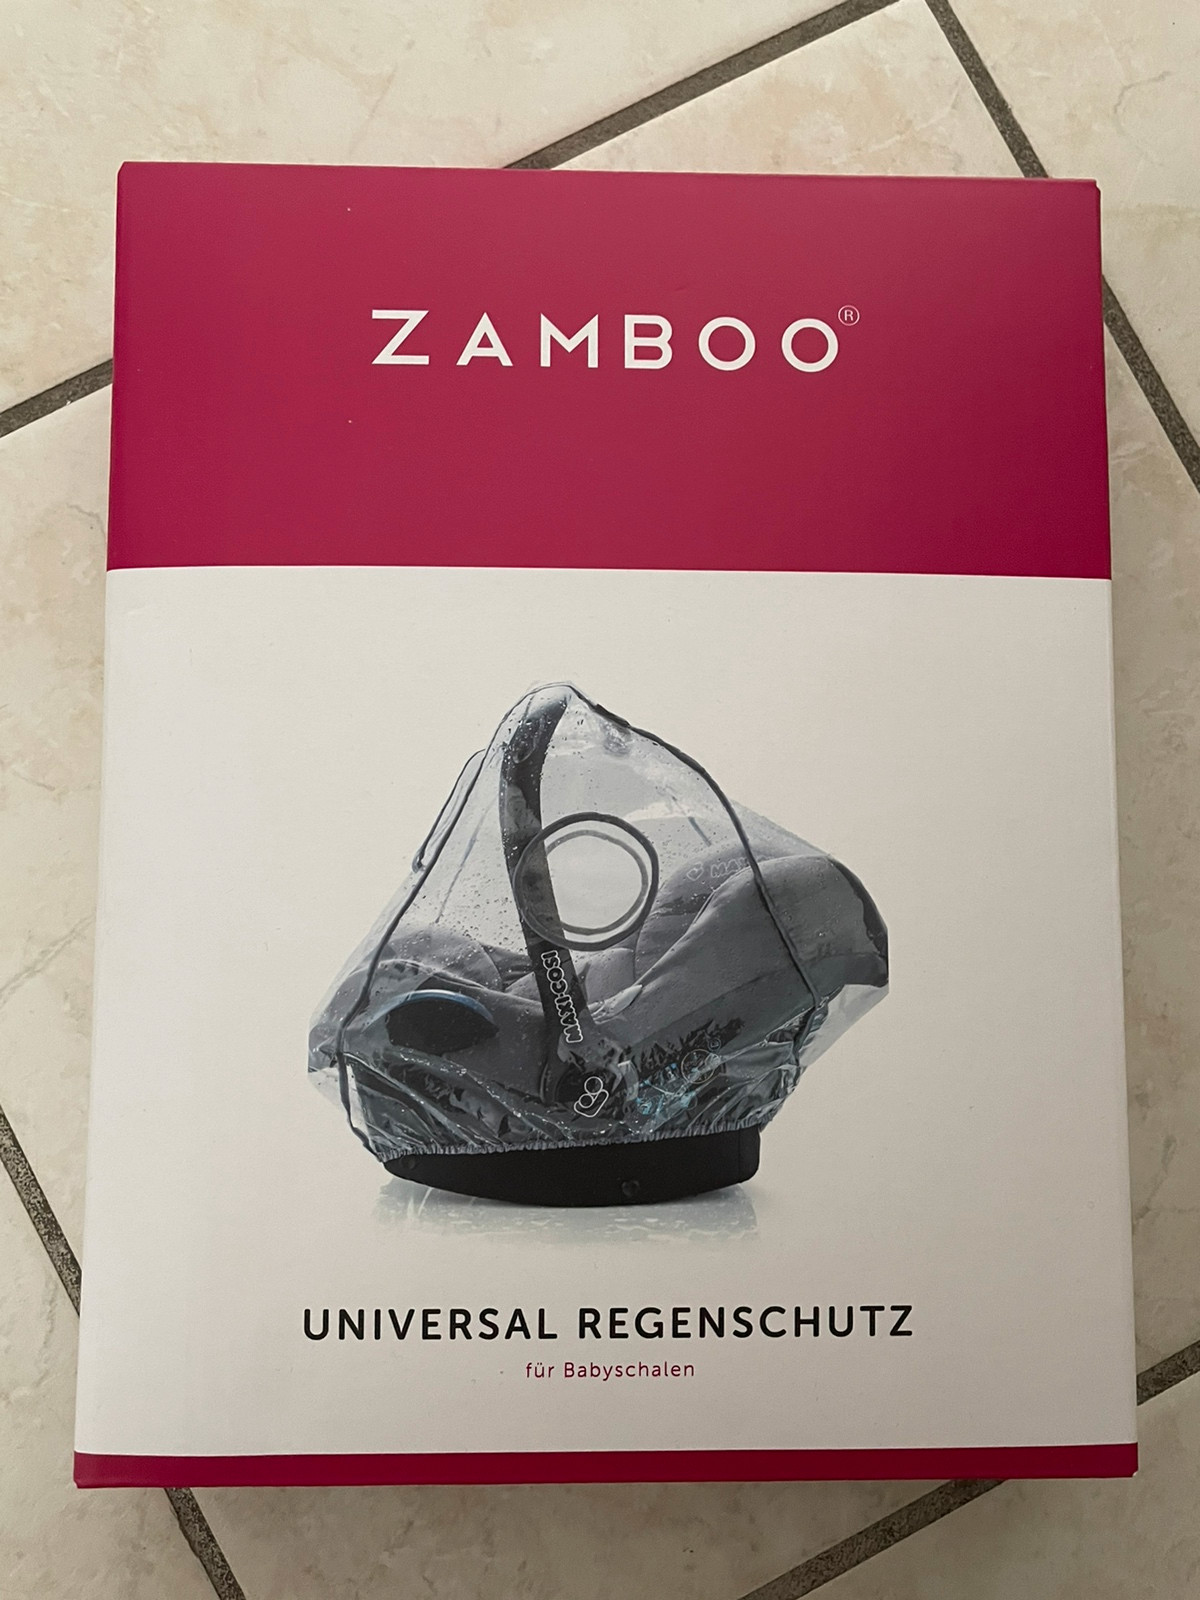 Zamboo Regenschutz für Babyschale